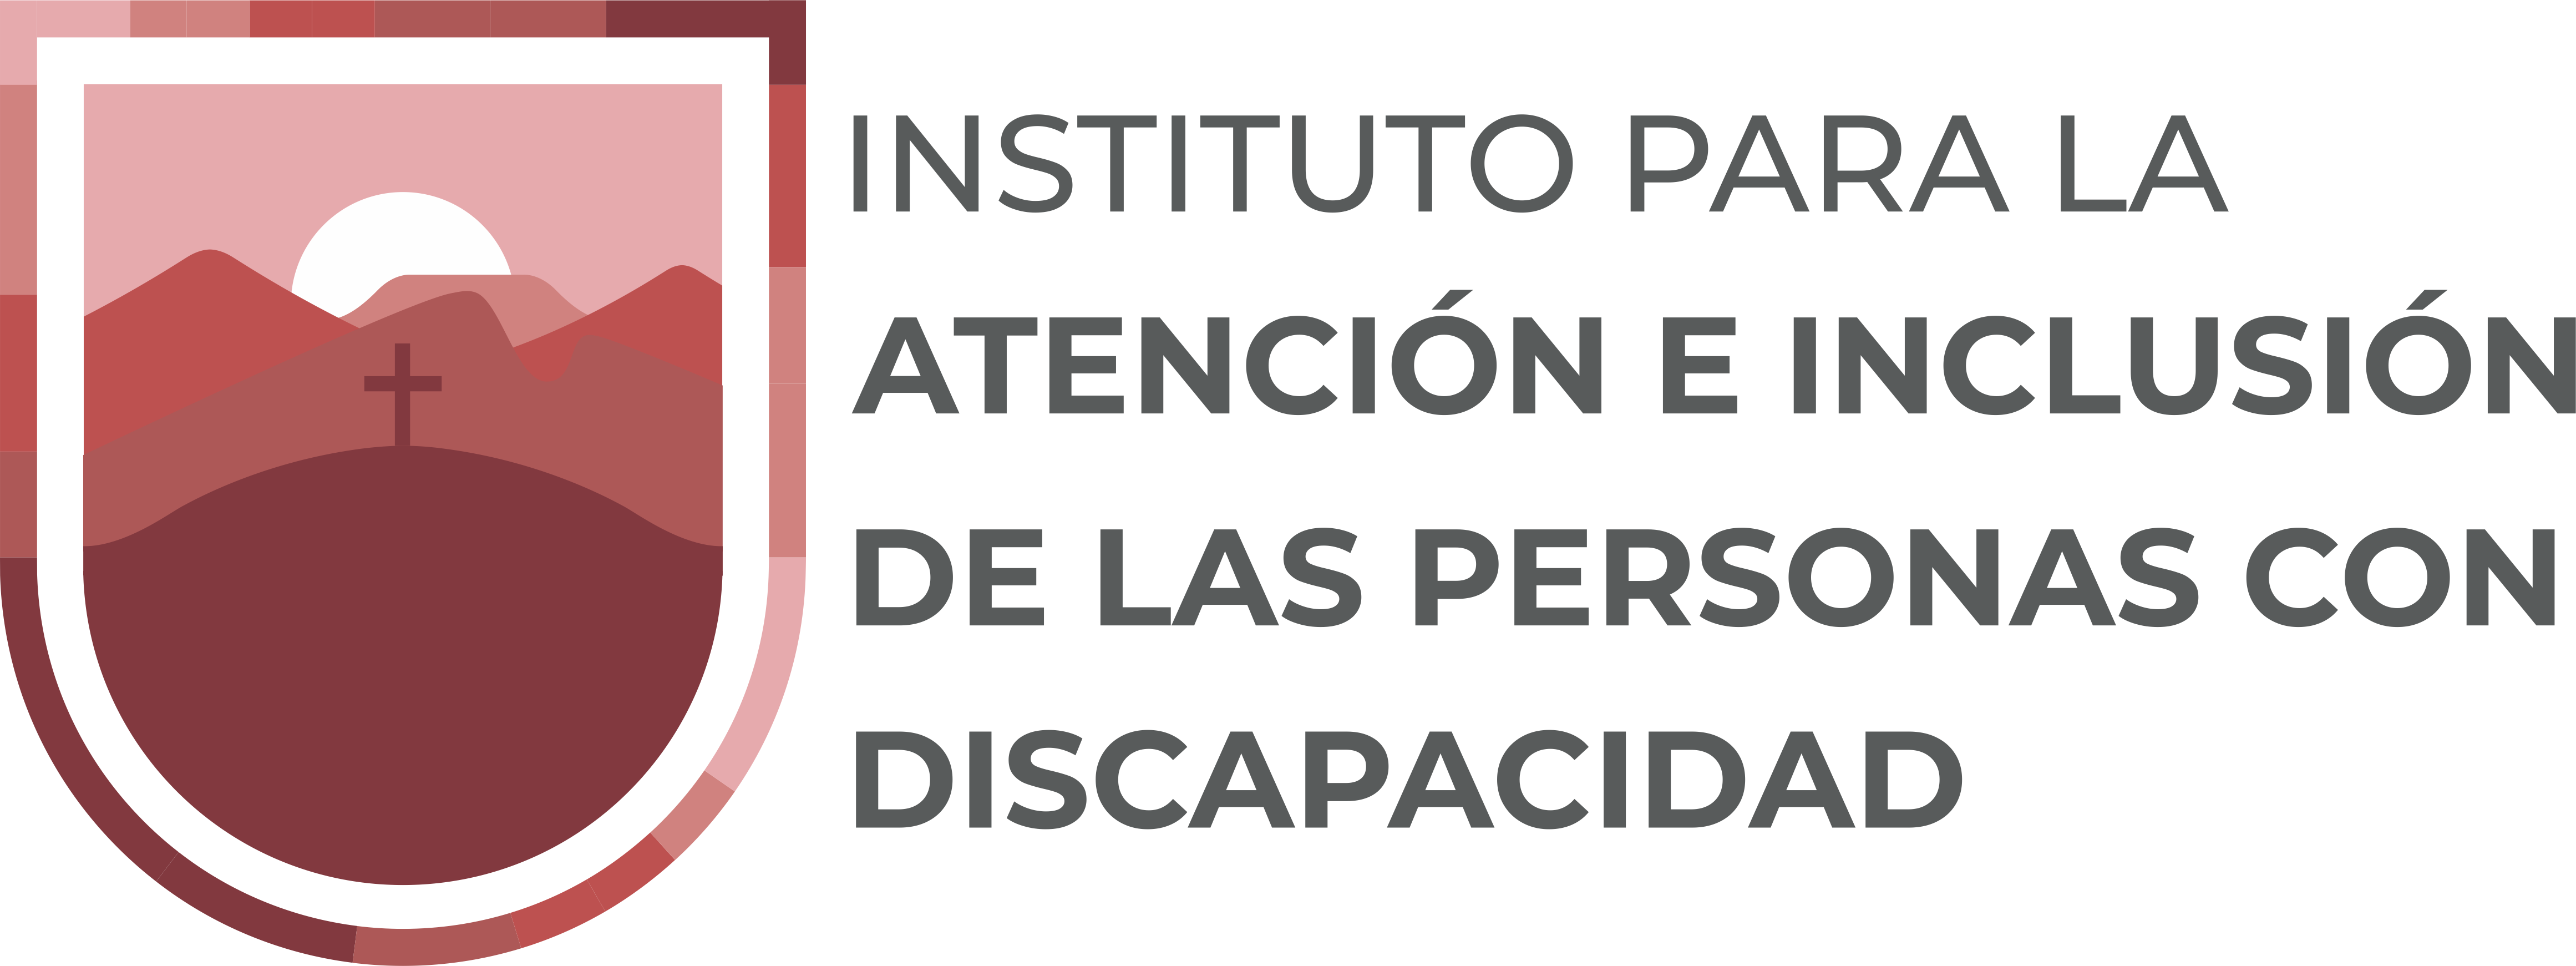 Logotipo del Instituto para la Atención e Inclusión de las Personas con Discapacidad